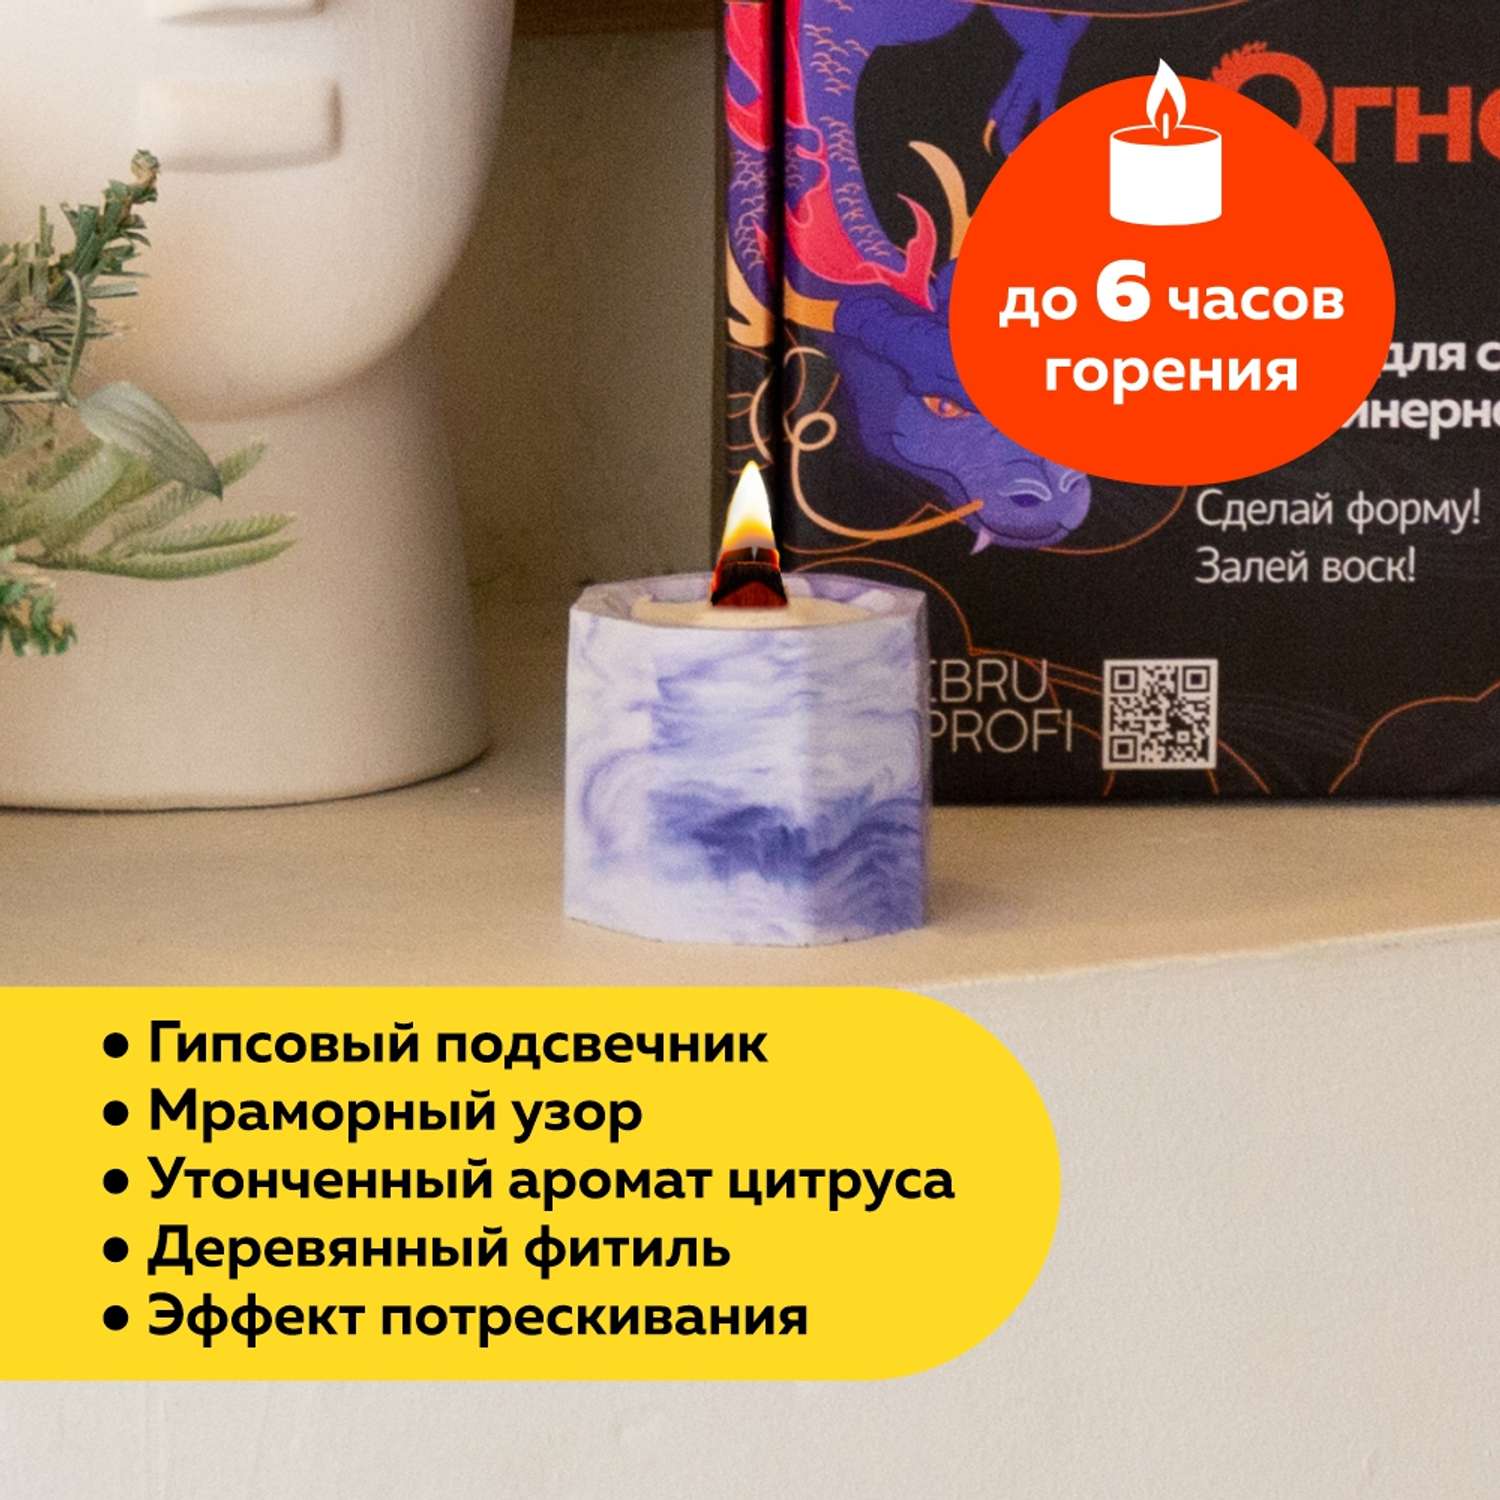 Набор для творчества Ebru Profi 01015 по созданию контейнерной свечи. Огненный феникс - фото 4